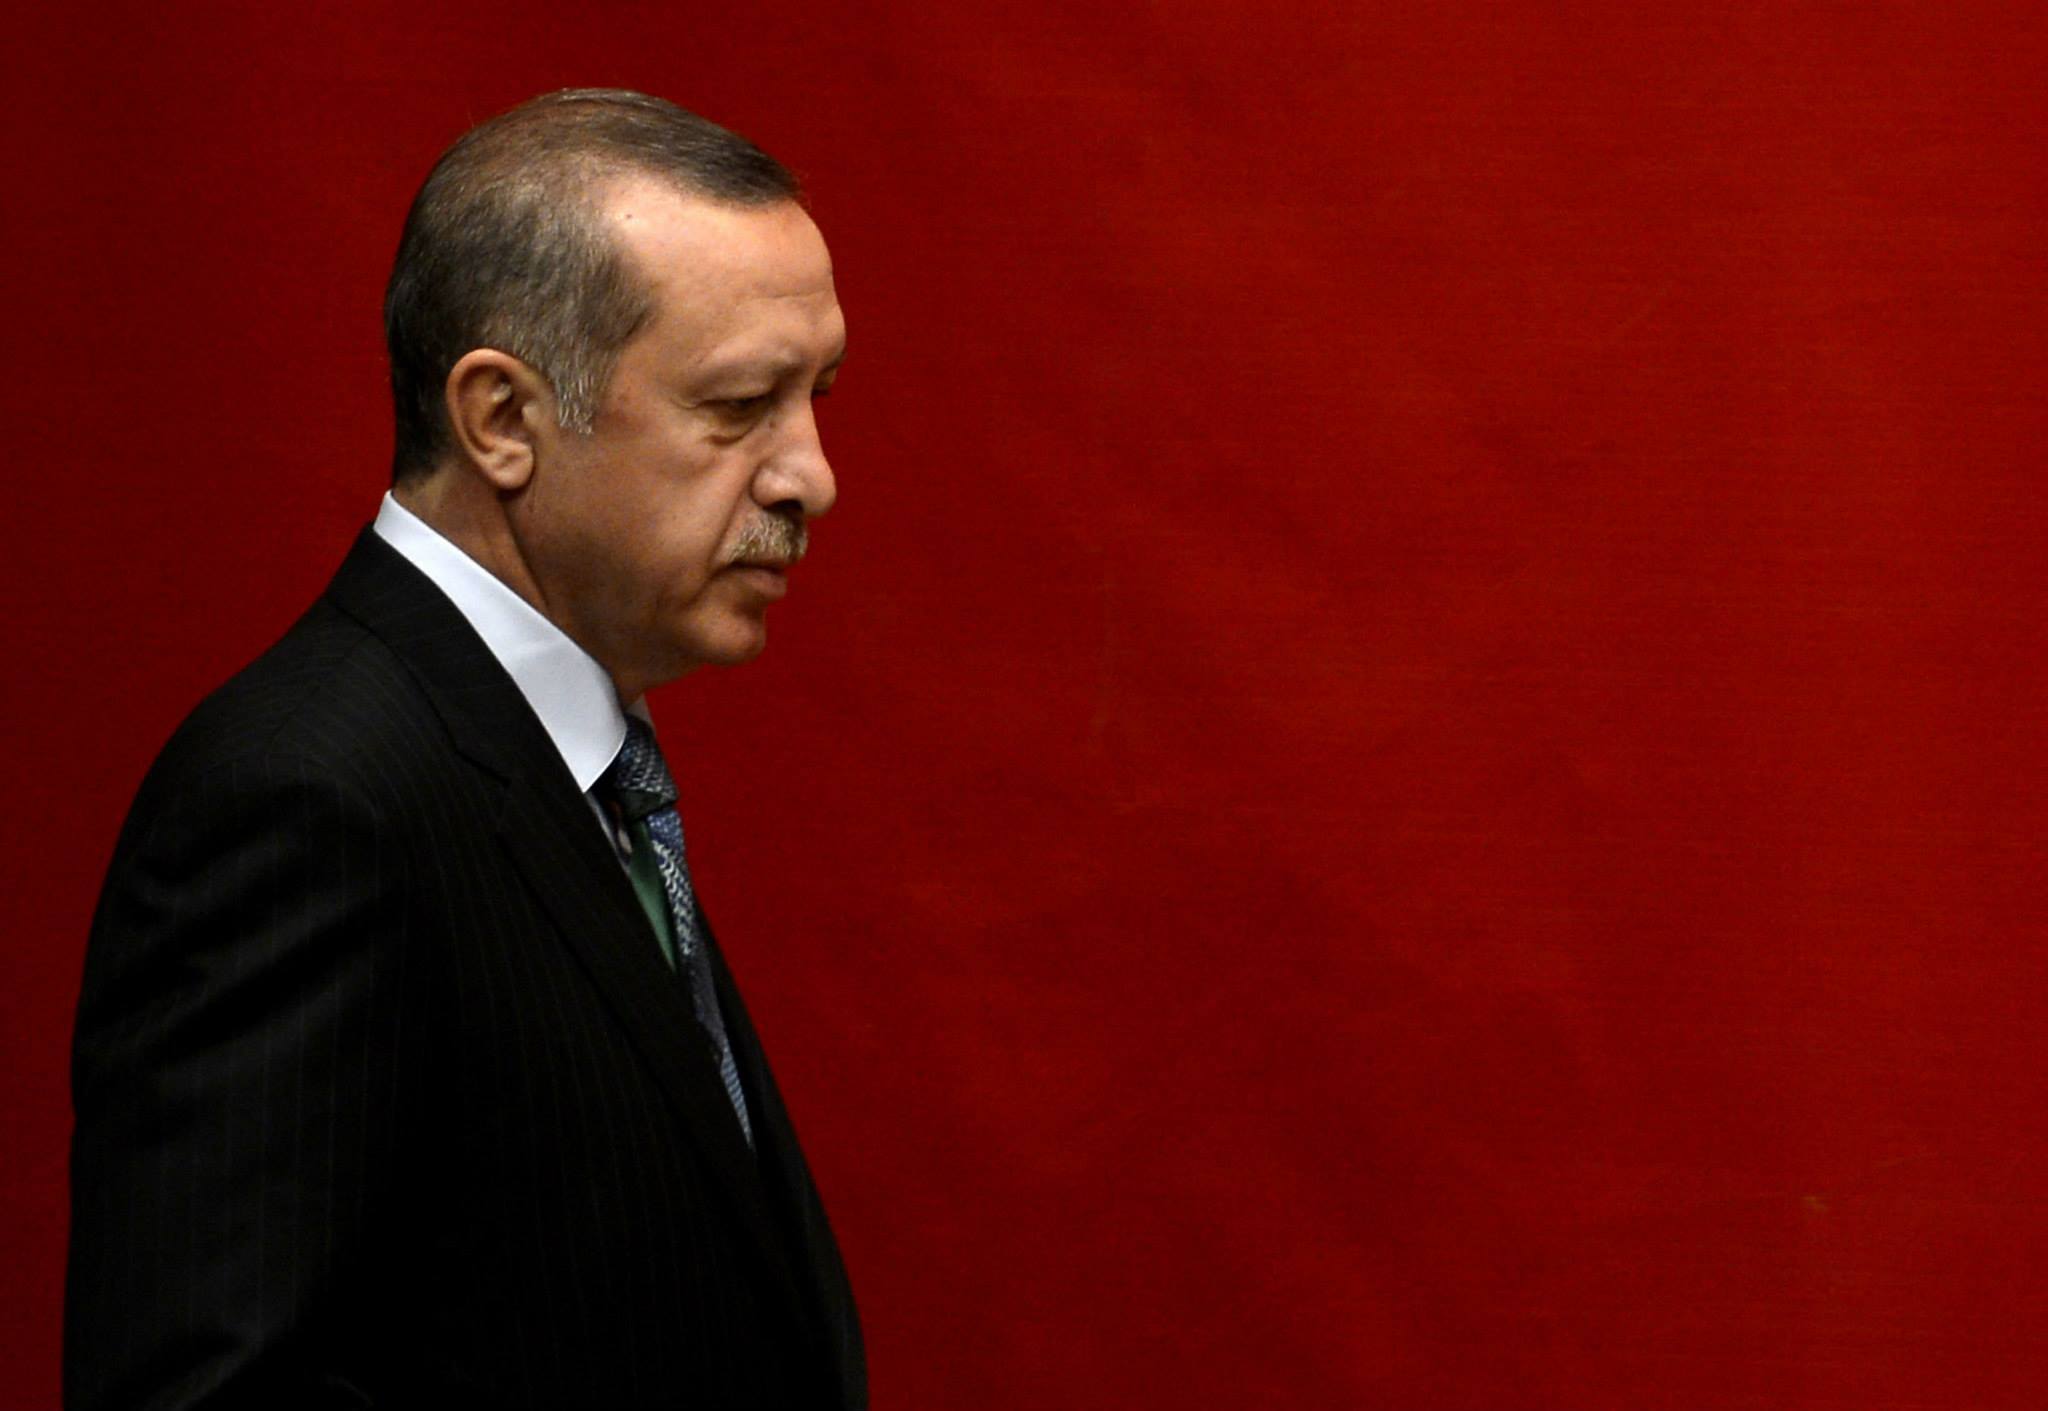 Boşuna uğraşmayın, Ahmet Davutoğlu ve Abdullah Gül'le beni birbirimize düşüremezsiniz